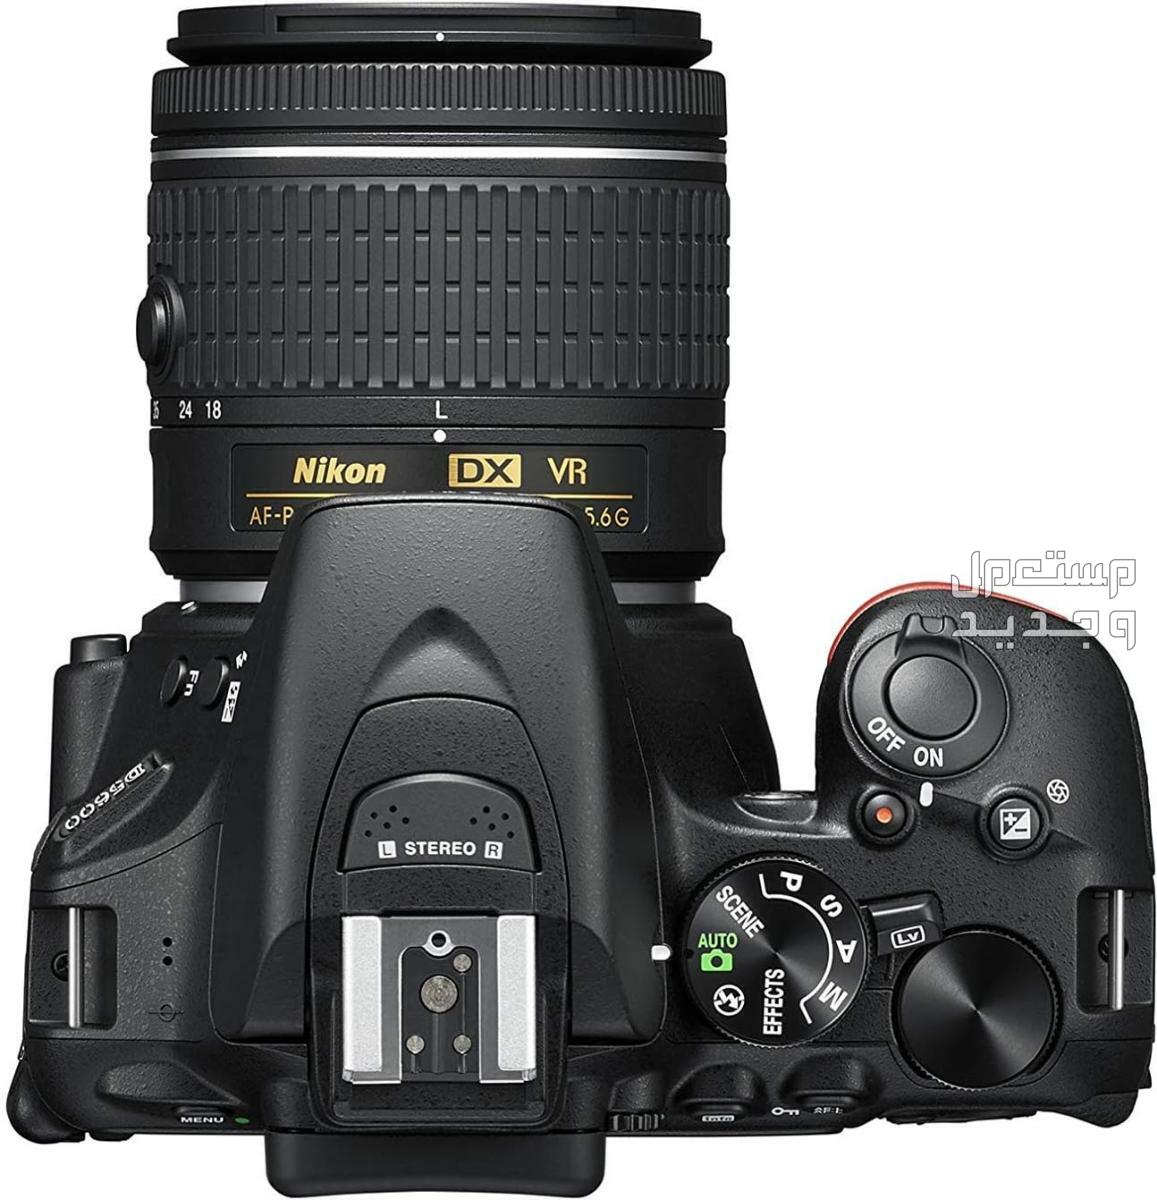 10 كاميرات تصوير ماركات عالمية بأسعار رخيصة في الأردن مميزات كاميرا Nikon D5600